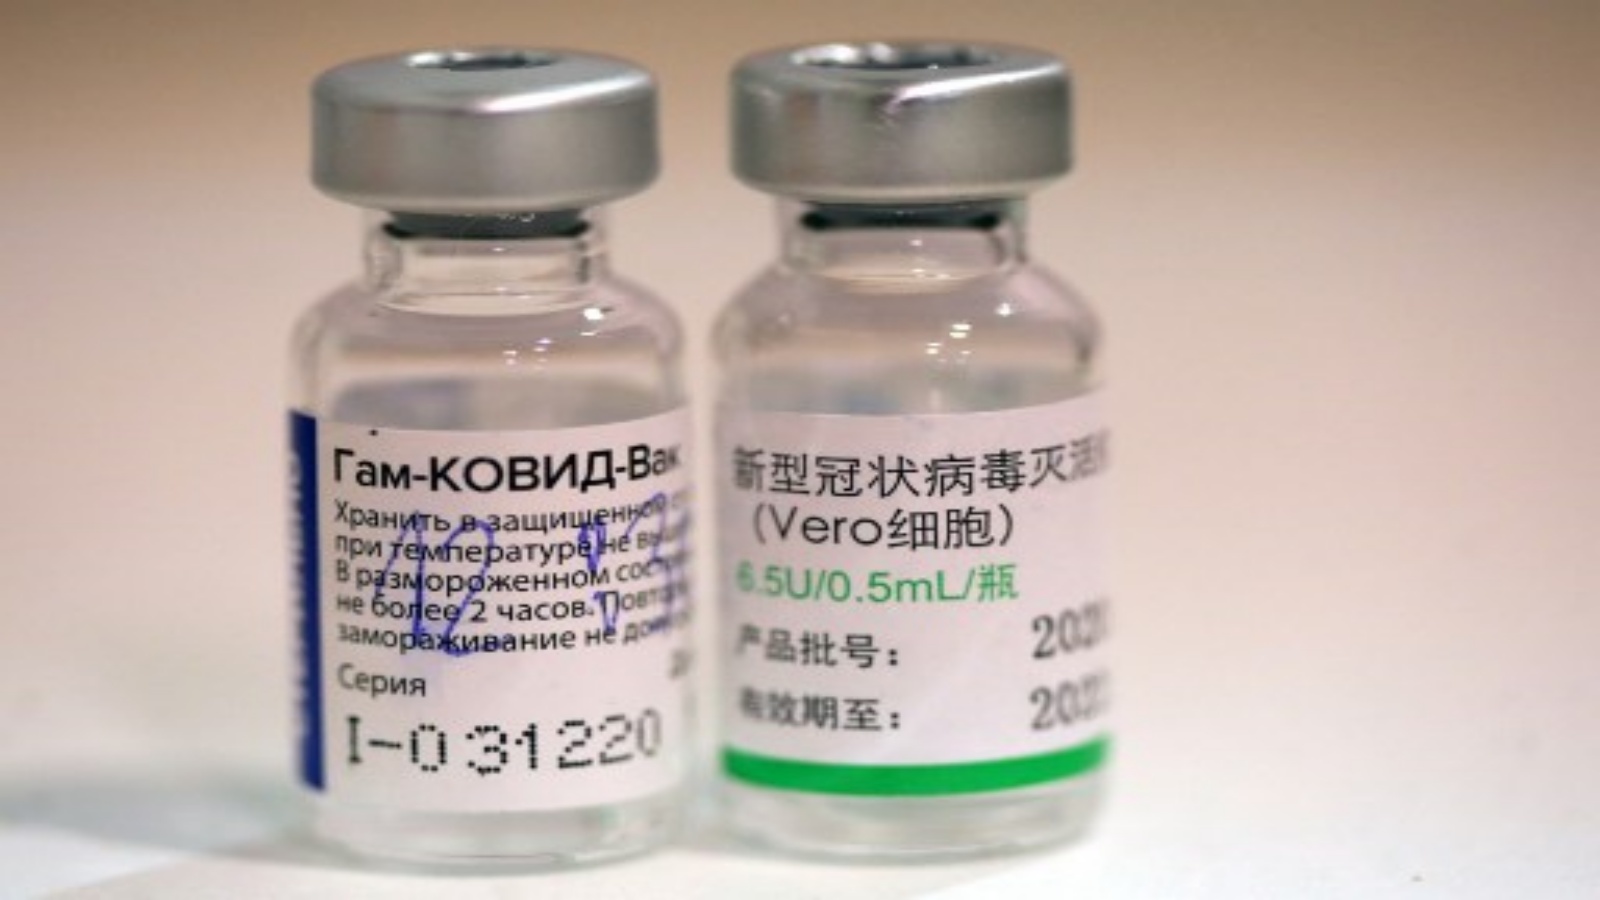 اللقاح الروسي والصيني أقر استخدامهما في سورية